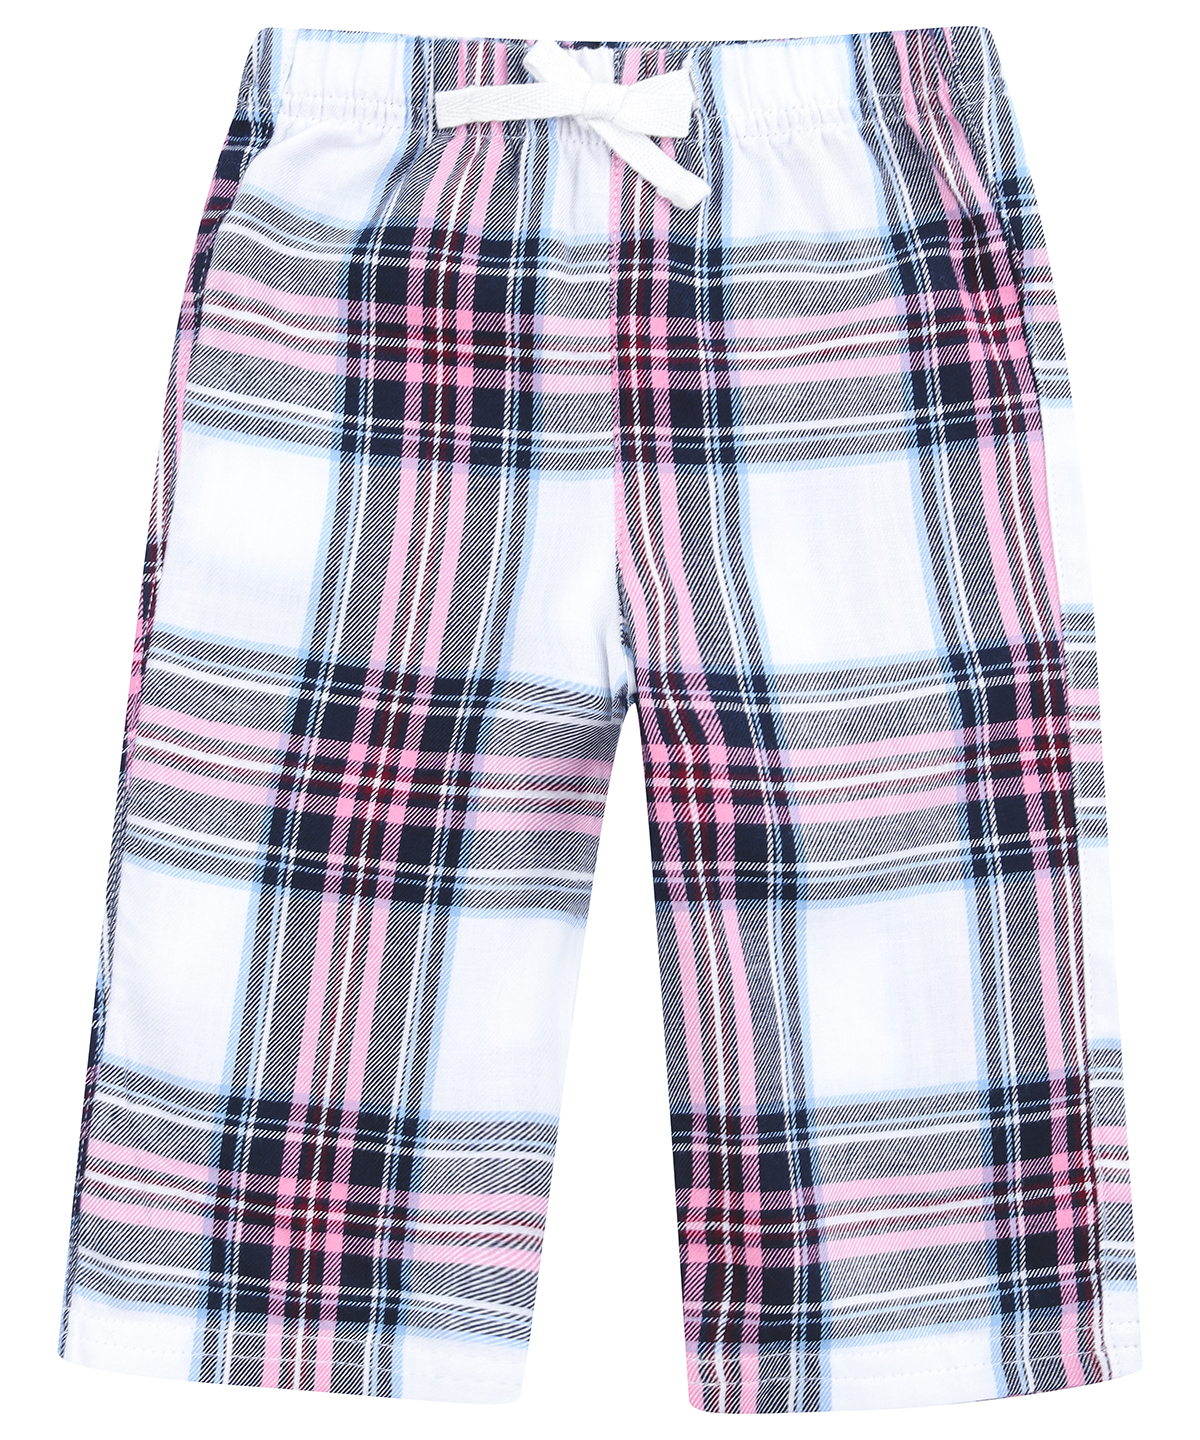 Tartan Lounge Trousers White/Pink Check Size 6